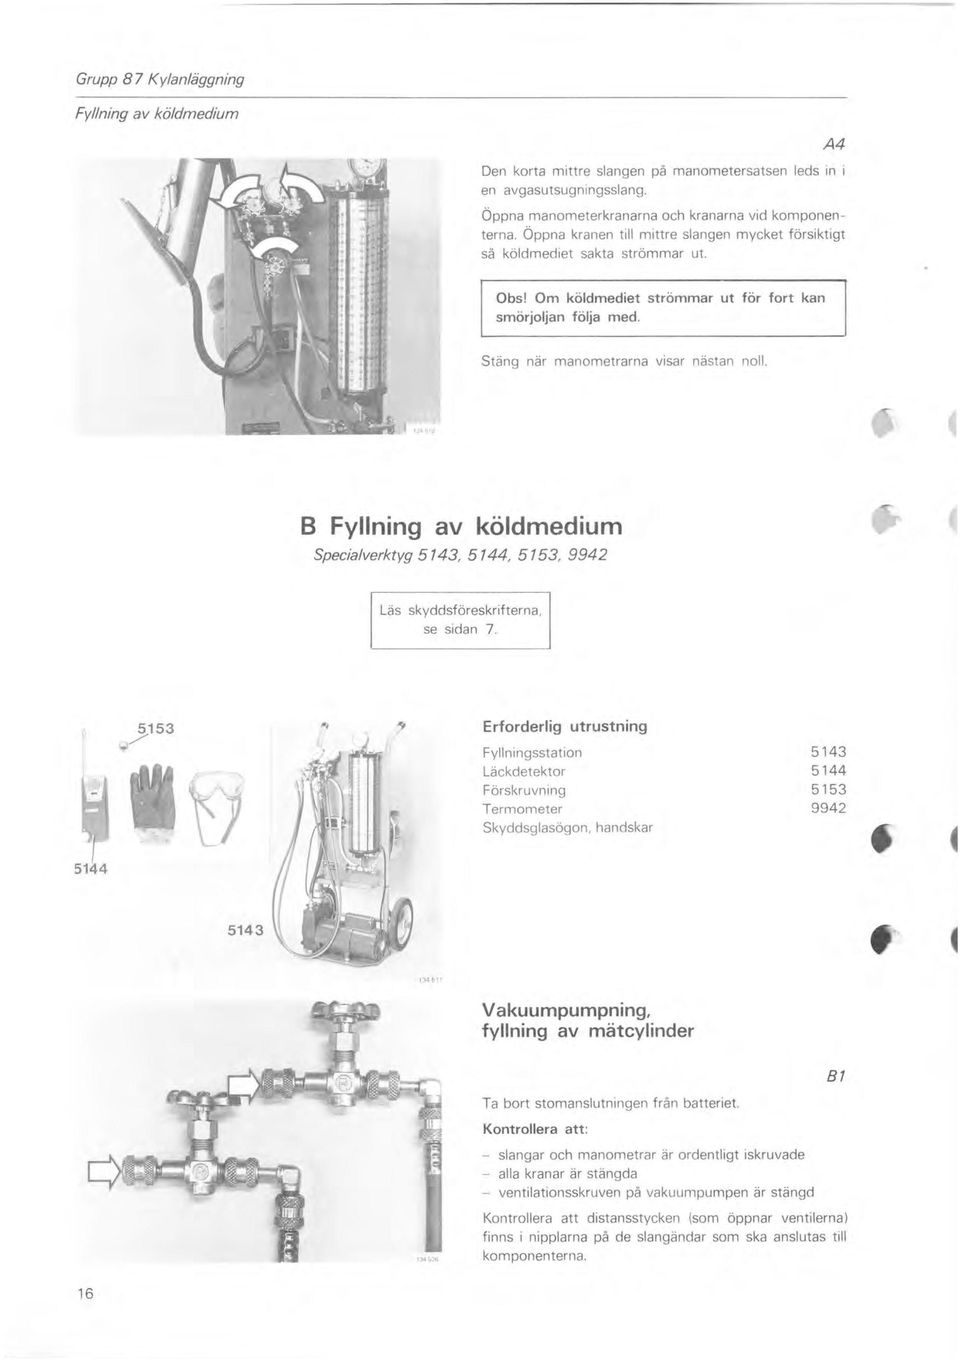 B Fyllning av köldmedium Specialverktyg 5143, 5144, 5153, 9942 Läs skyddsföreskrifterna, se sidan 7.